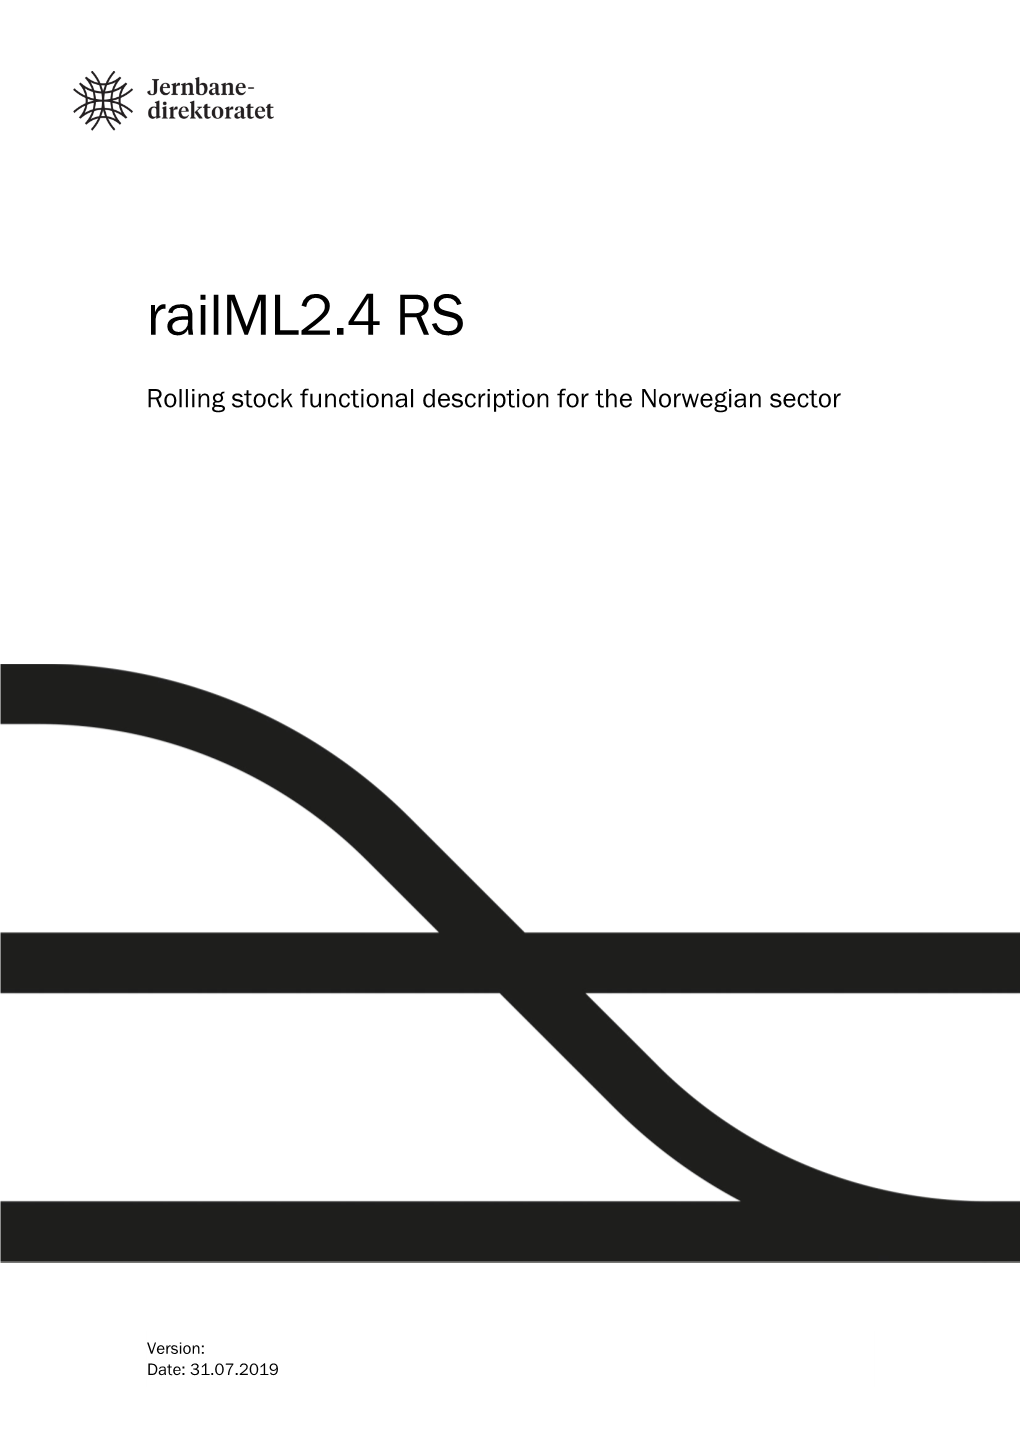 Railml2.4 RS